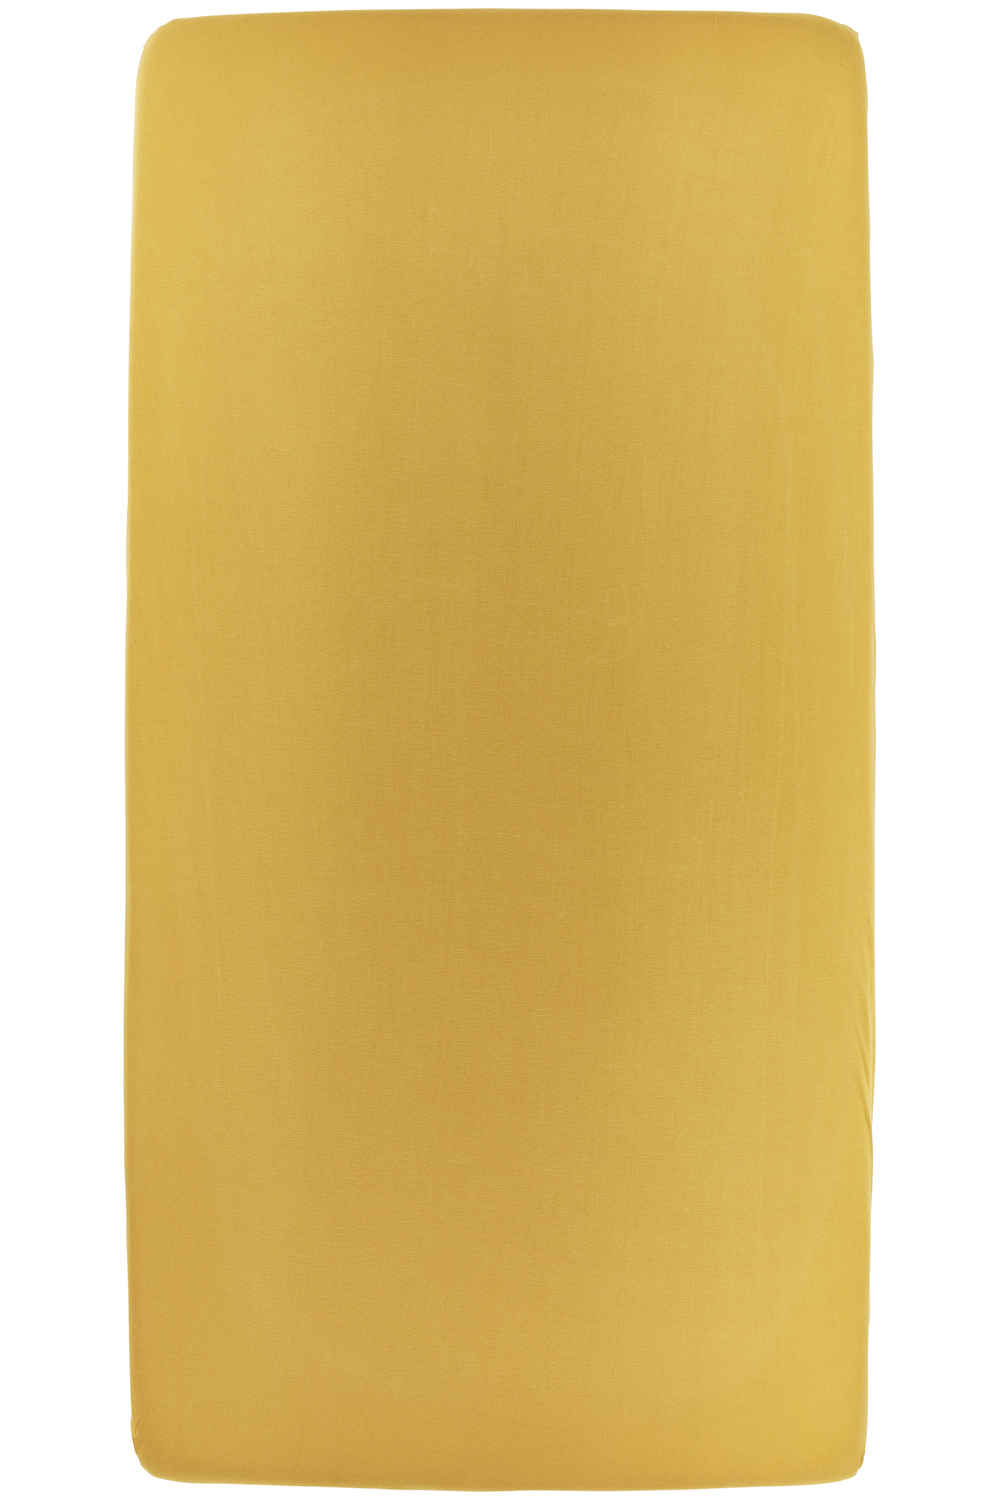 Hoeslaken tweepersoons Uni - honey gold - 180x200cm